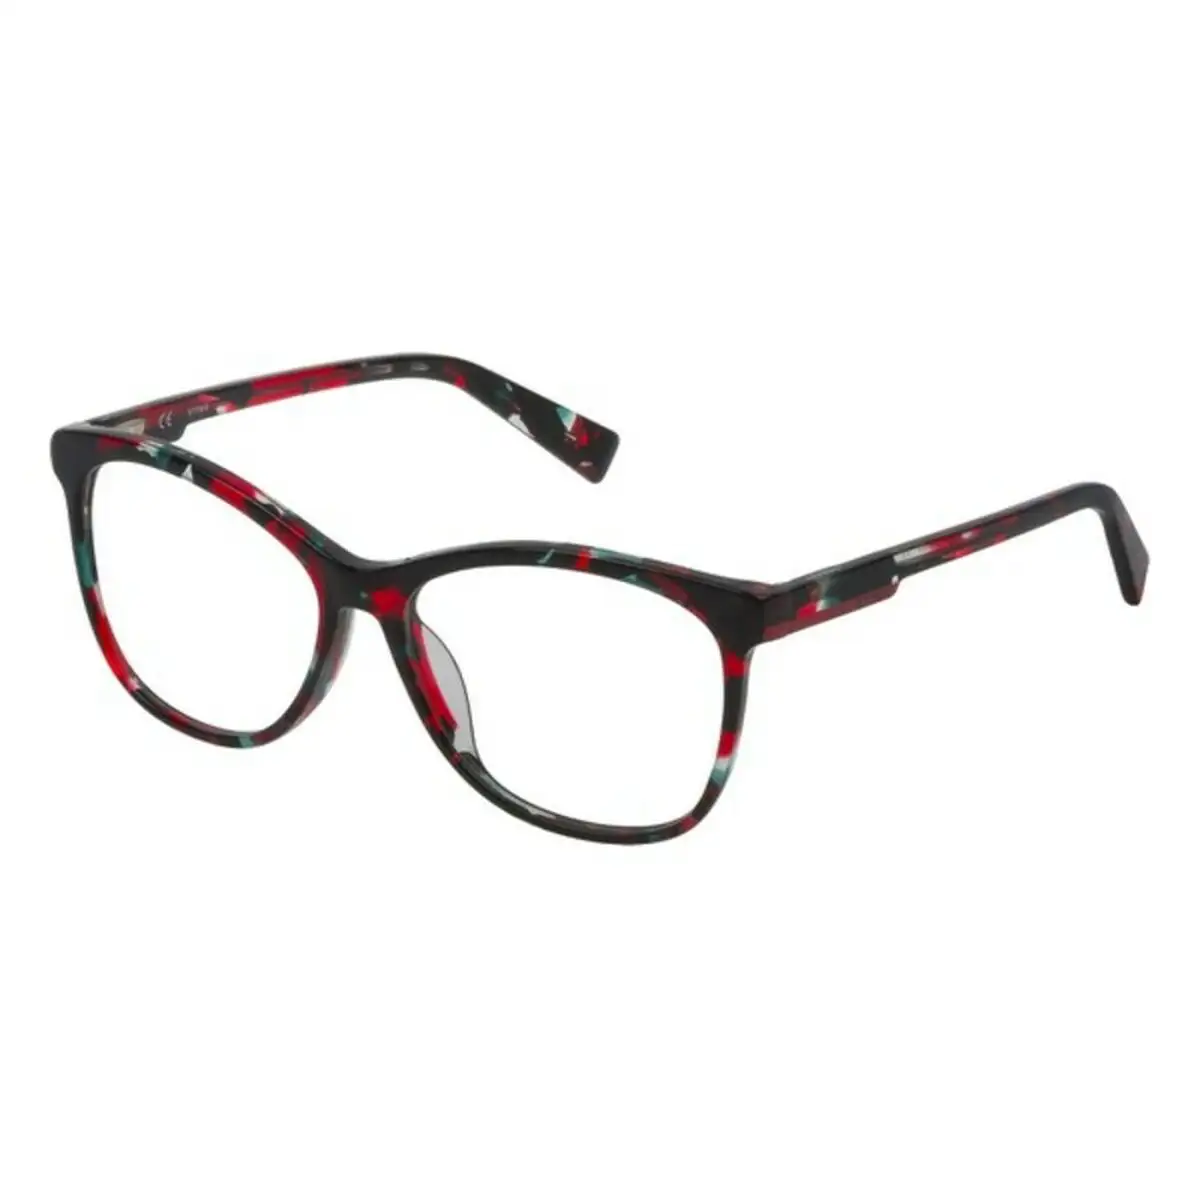 Monture de lunettes femme sting vst183550gec noir vert o 55 mm _7037. DIAYTAR SENEGAL - Votre Passage vers l'Exceptionnel. Explorez notre boutique en ligne, où chaque produit est choisi avec soin pour offrir une expérience de shopping inoubliable.